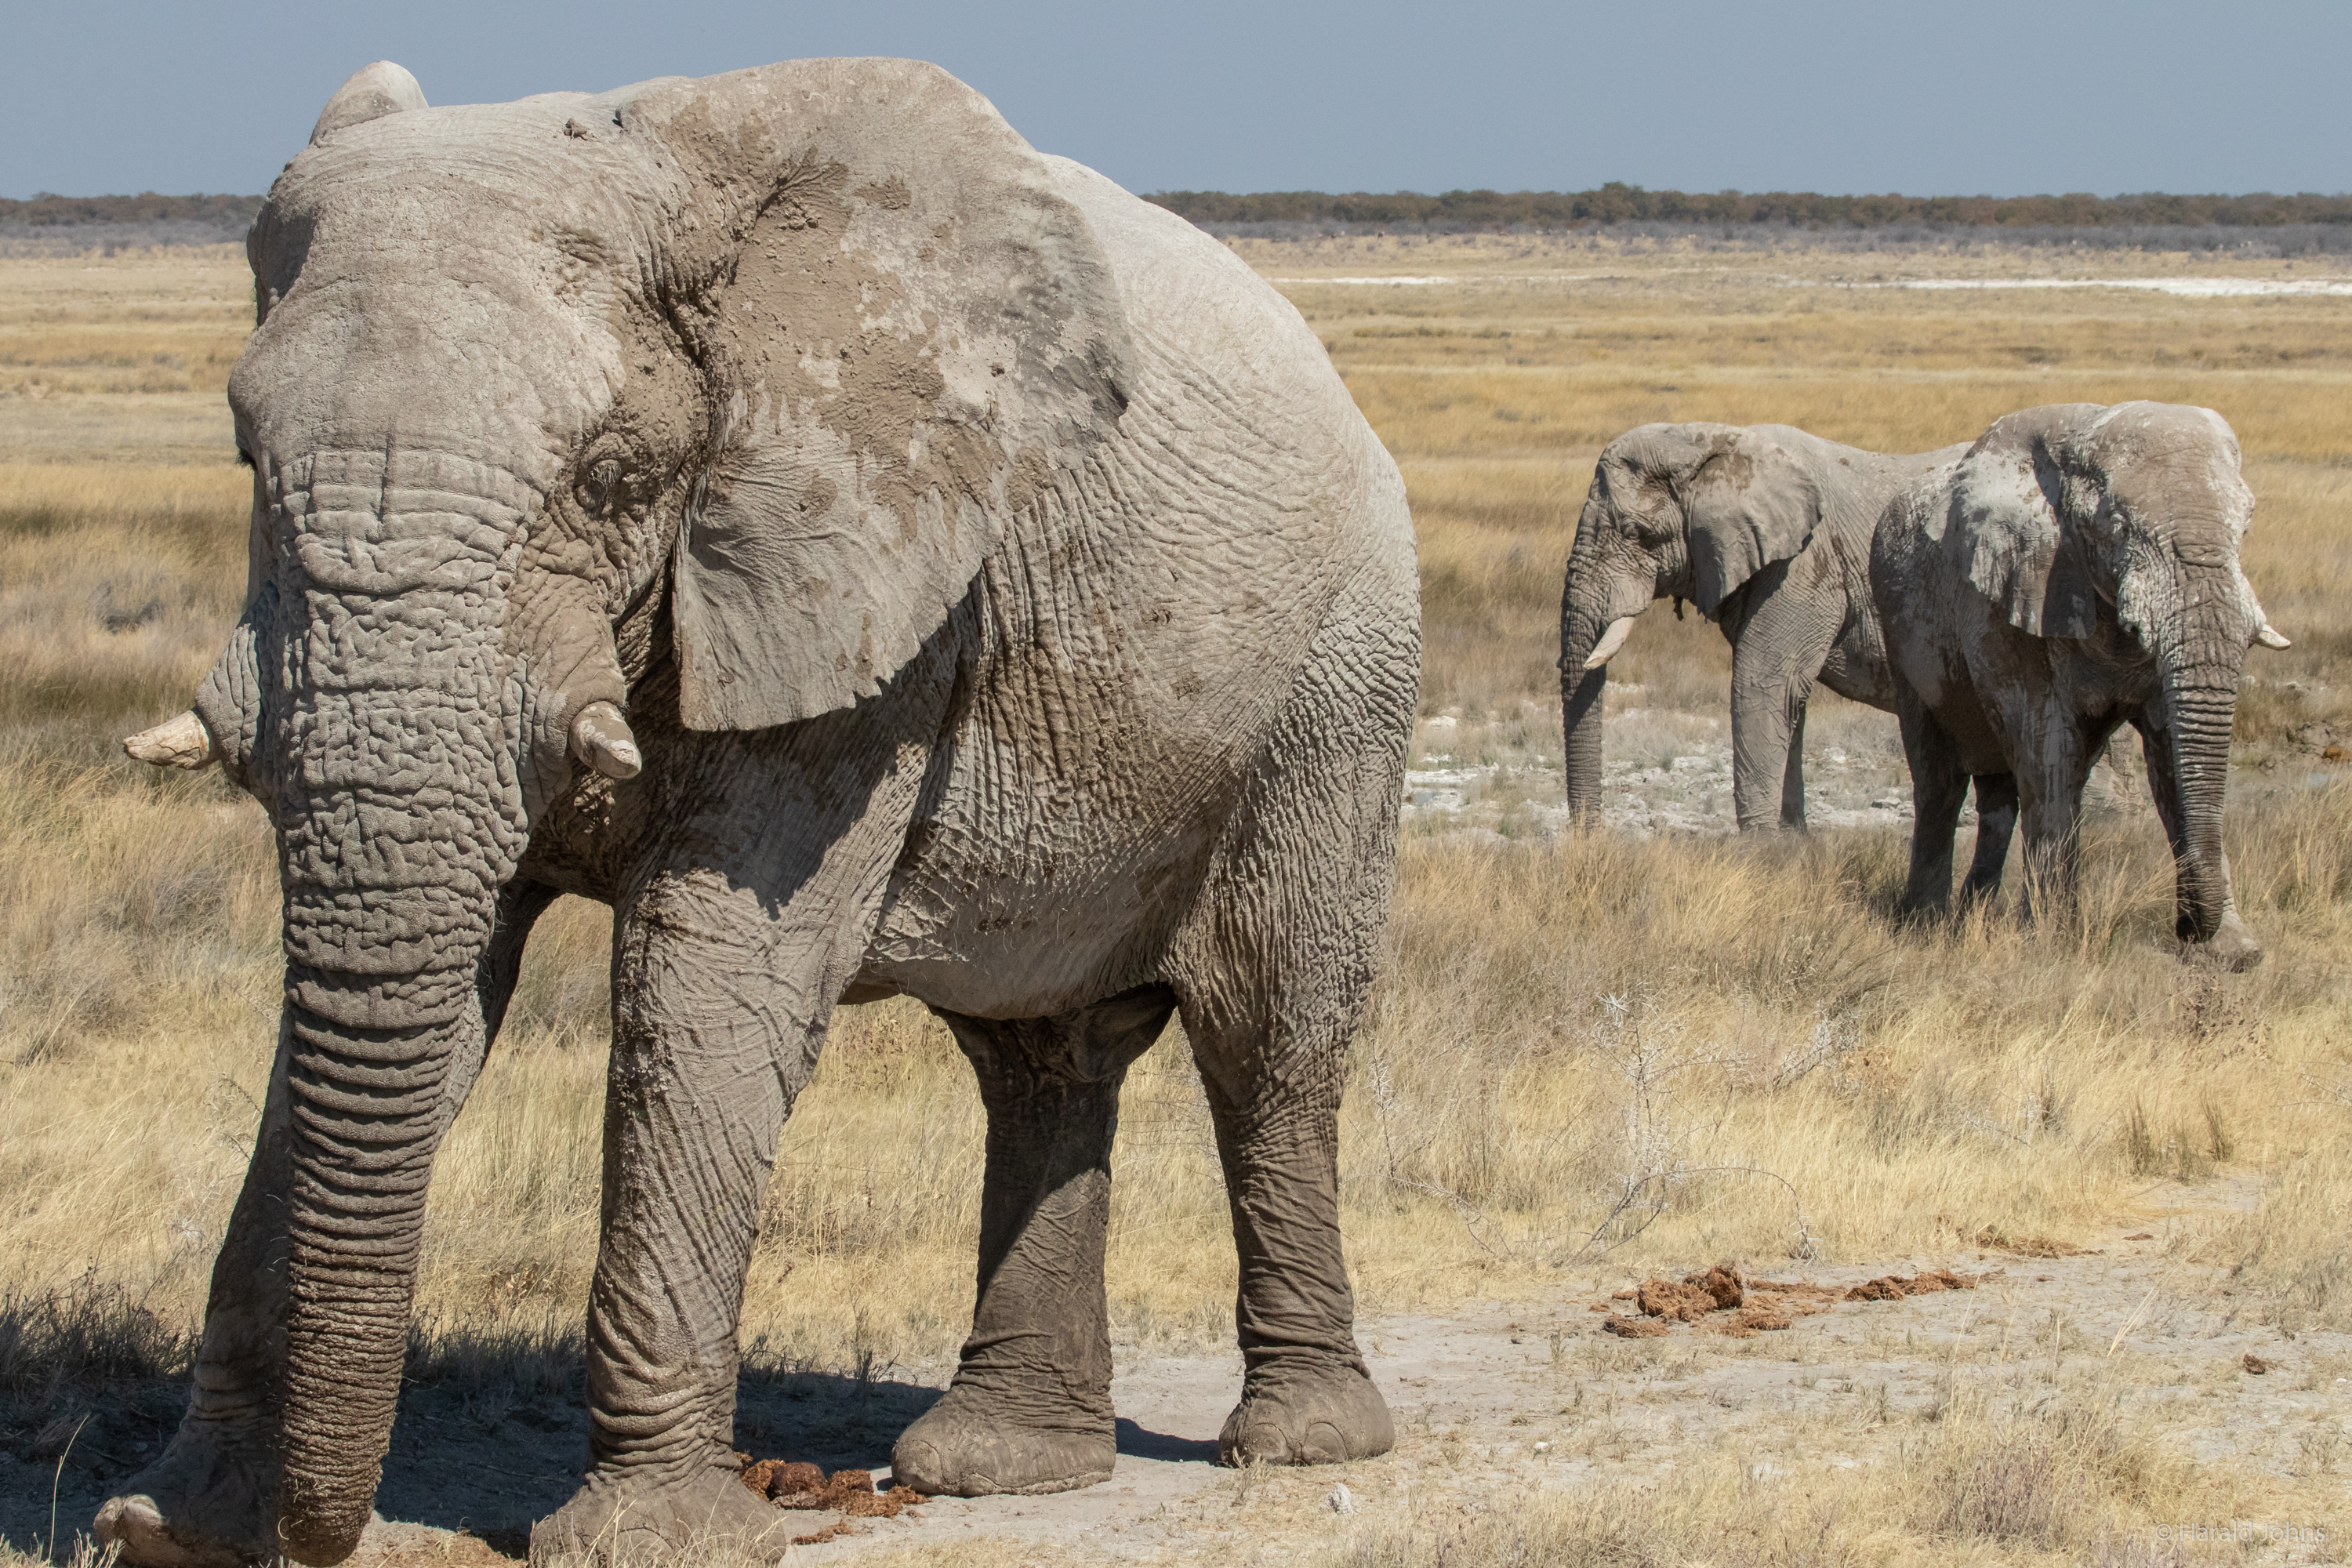 Ihre Stoßzähne bleiben jedoch kurz und brechen häufig ab, da den Elefanten im Etosha bestimmte Nährstoffe fehlen.